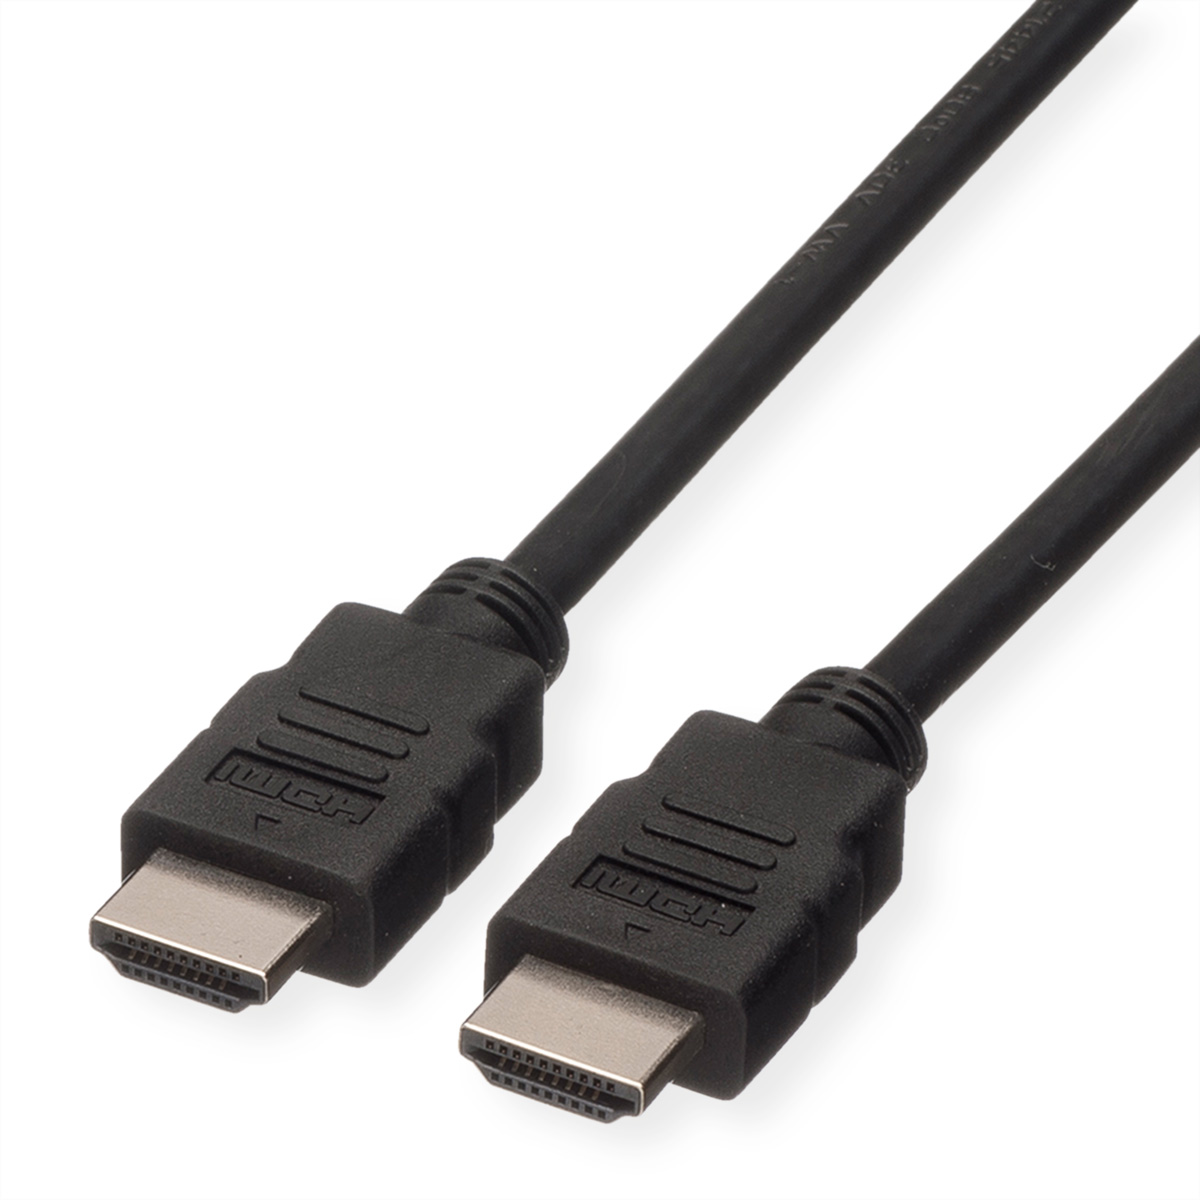 ROLINE GREEN HDMI High Speed Kabel mit Ethernet, TPE, schwarz, 1 m